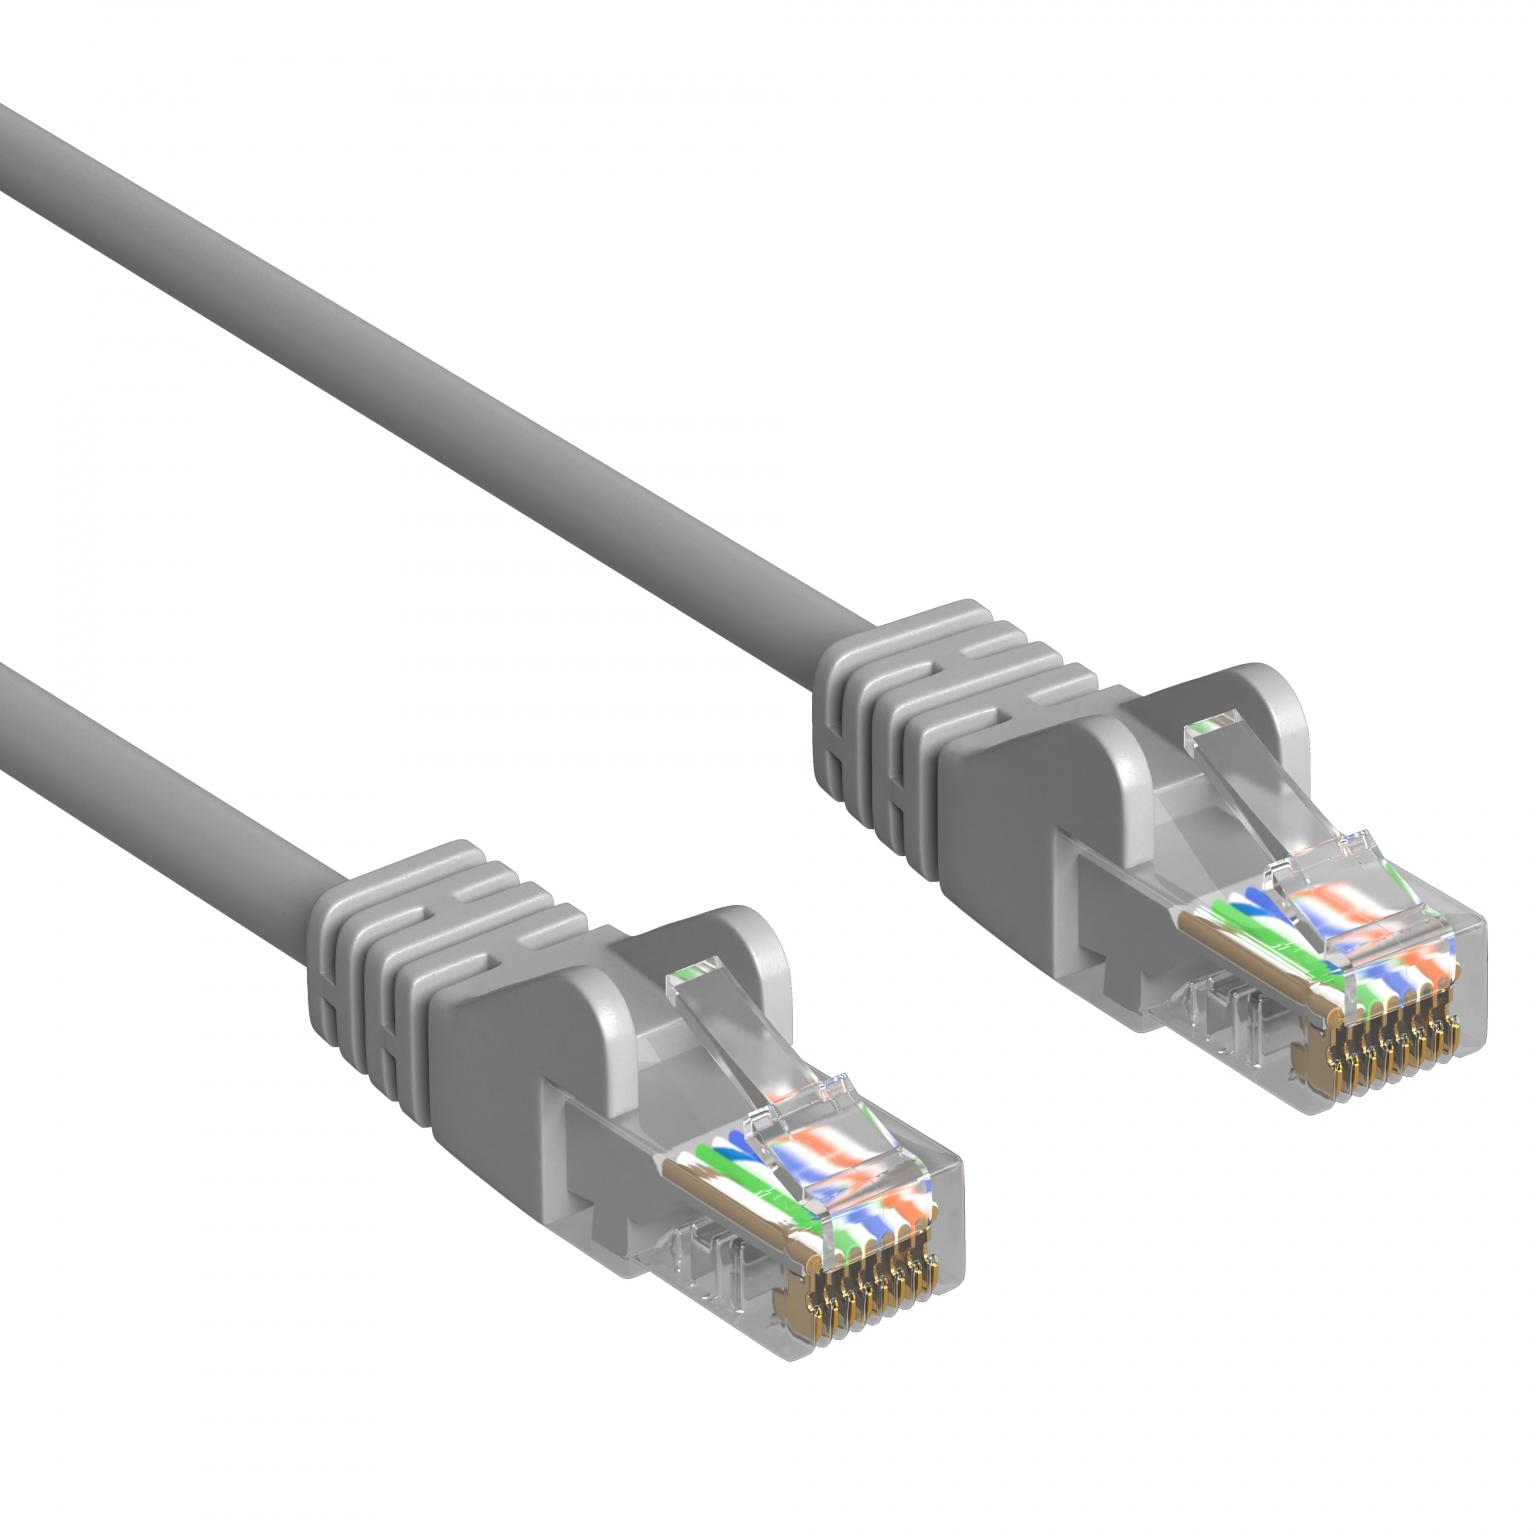 DSL-Netzwerkkabel - 10 Meter - Grau - Allteq